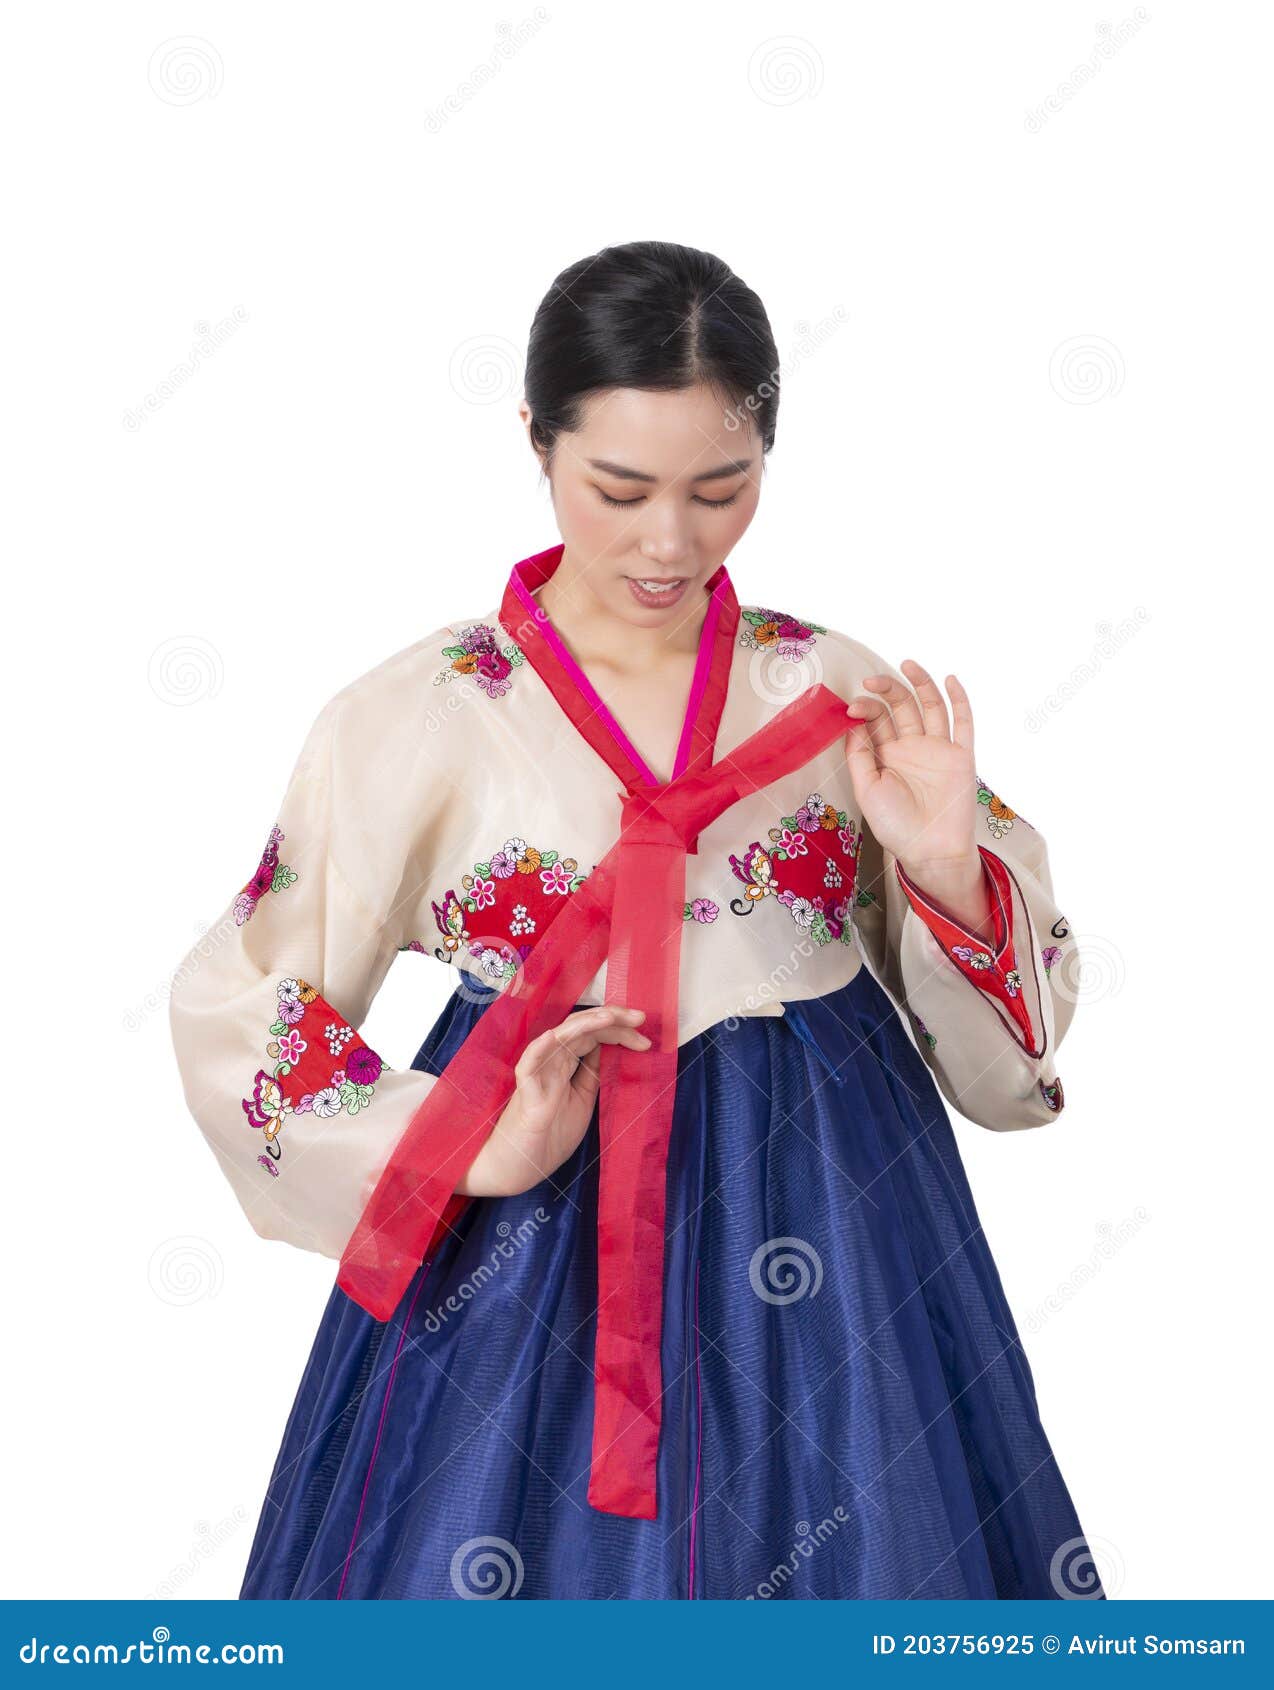 Hanbok & Hat | Korean outfits, Korean traditional dress, Modern hanbok